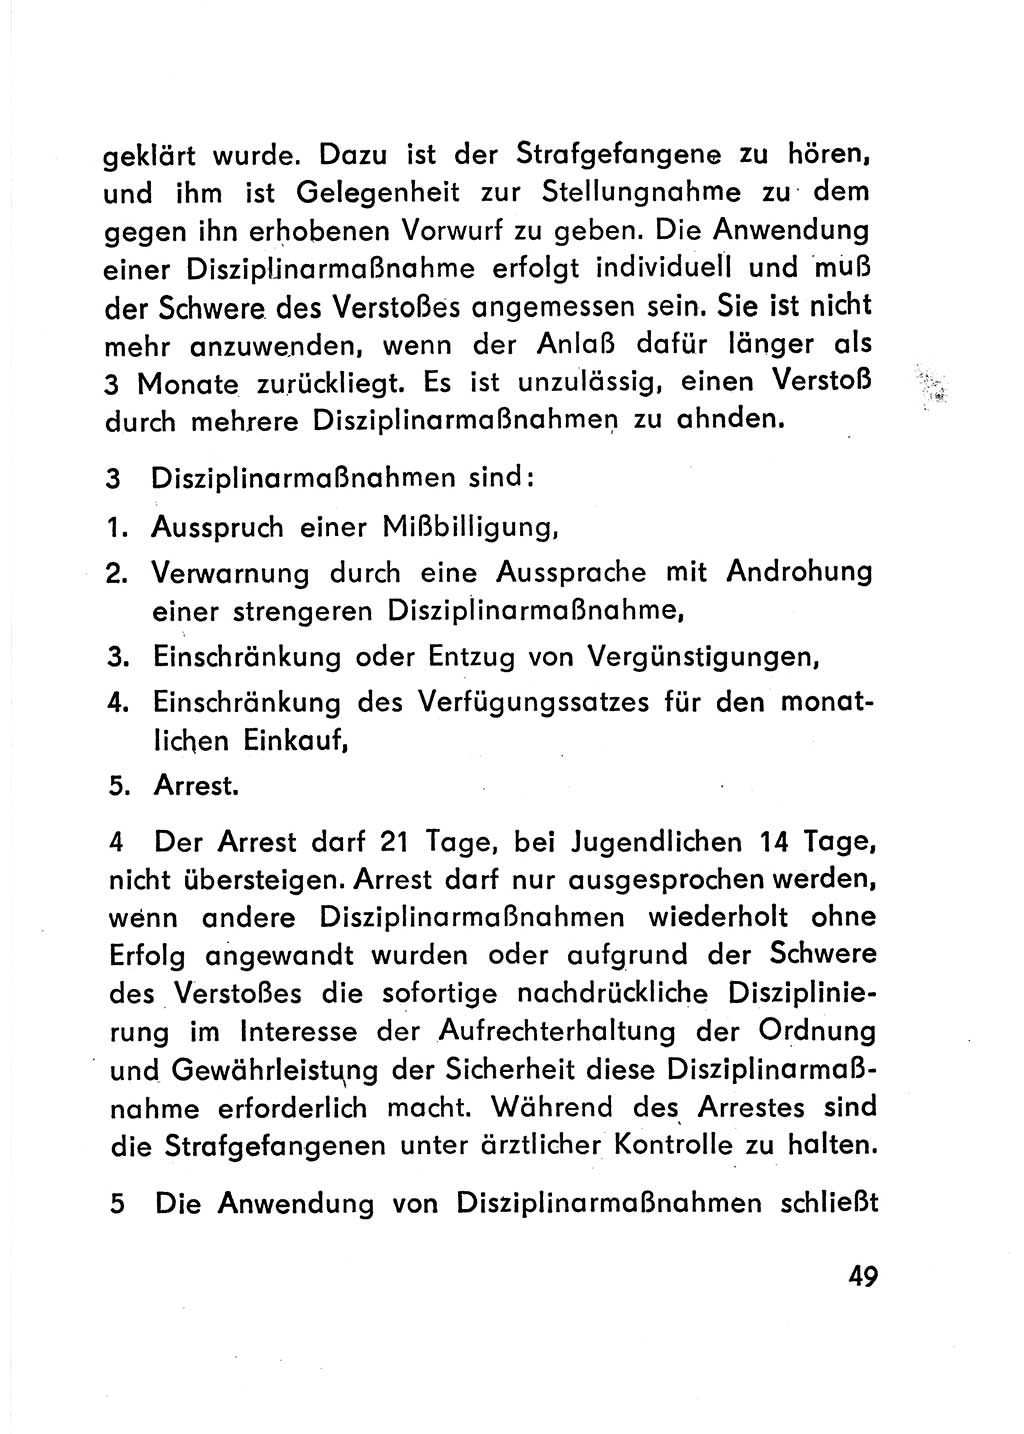 Gesetz über den Vollzug der Strafen mit Freiheitsentzug (Strafvollzugsgesetz) - StVG - [Deutsche Demokratische Republik (DDR)] 1977, Seite 49 (StVG DDR 1977, S. 49)